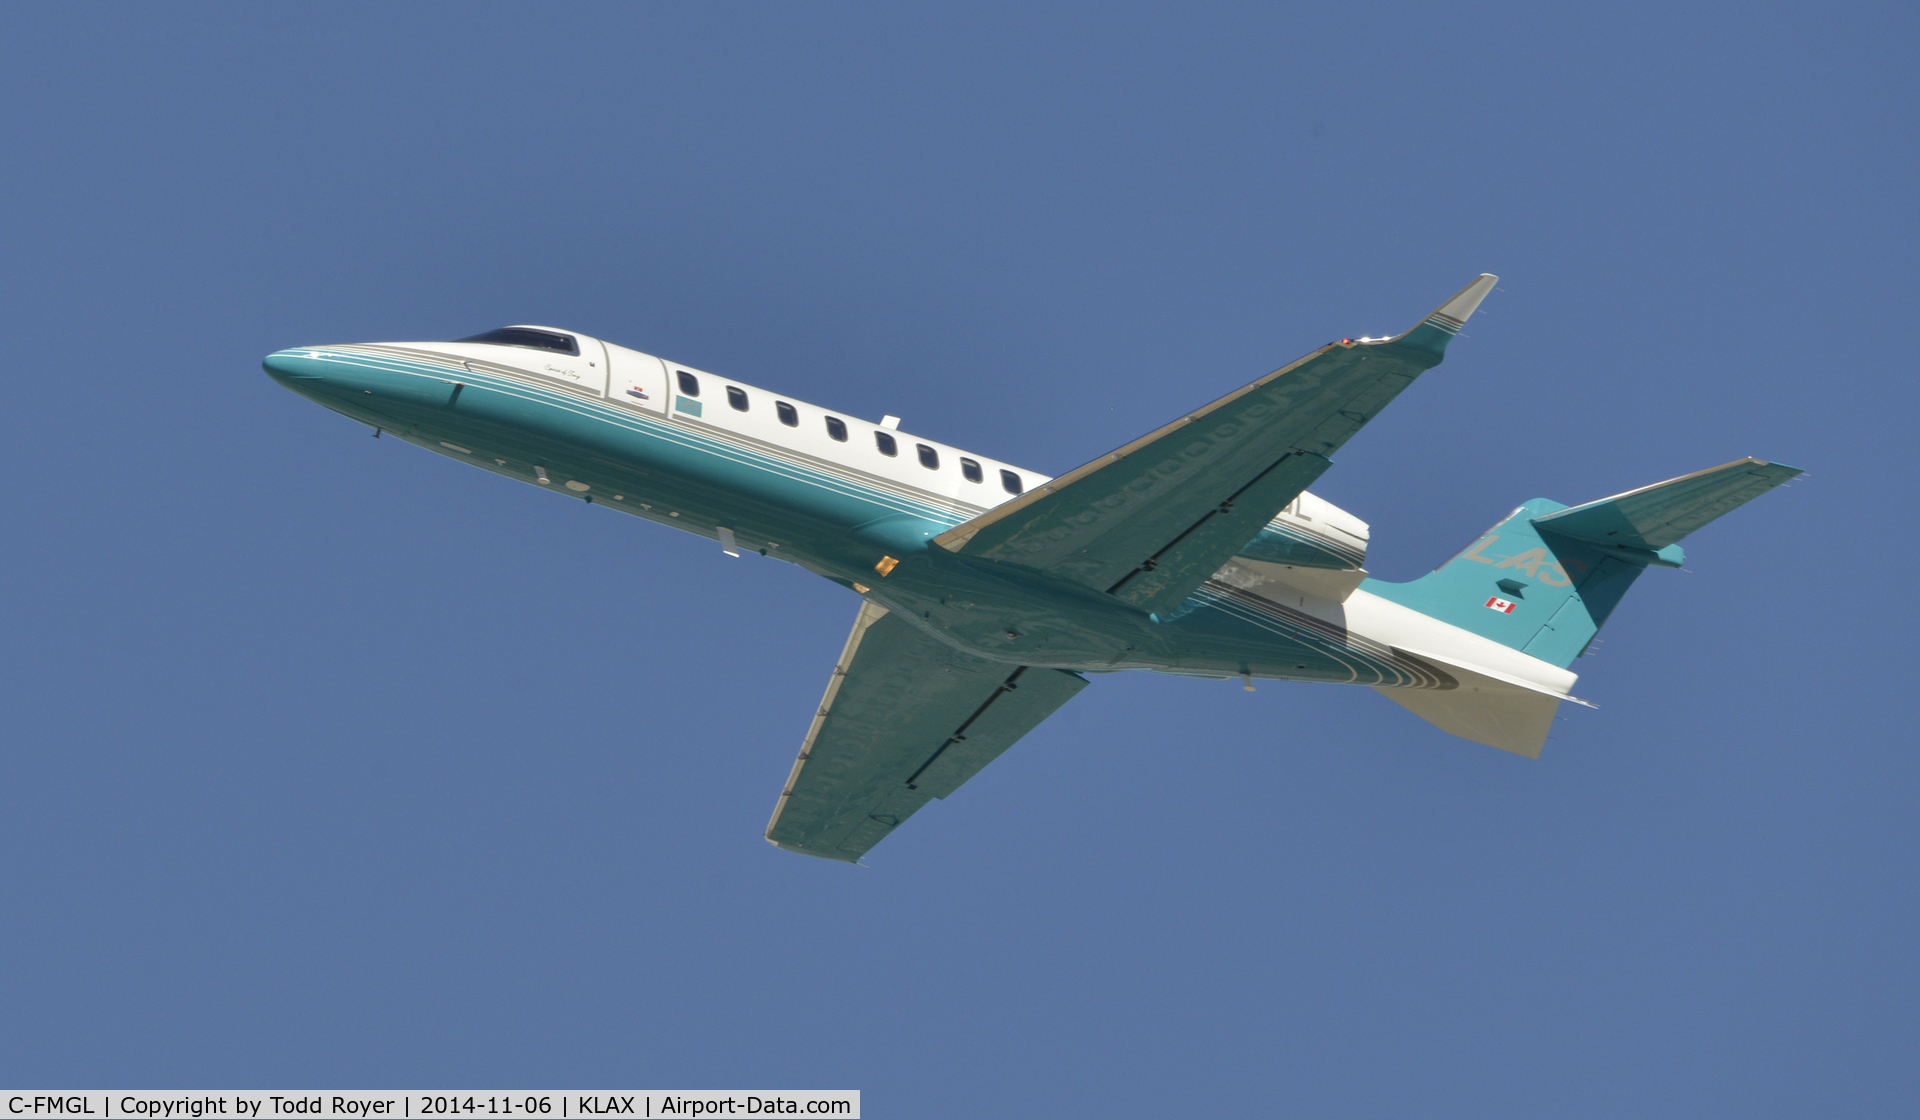 C-FMGL, 2013 Learjet 45 C/N 45-463, Departing LAX on 25L